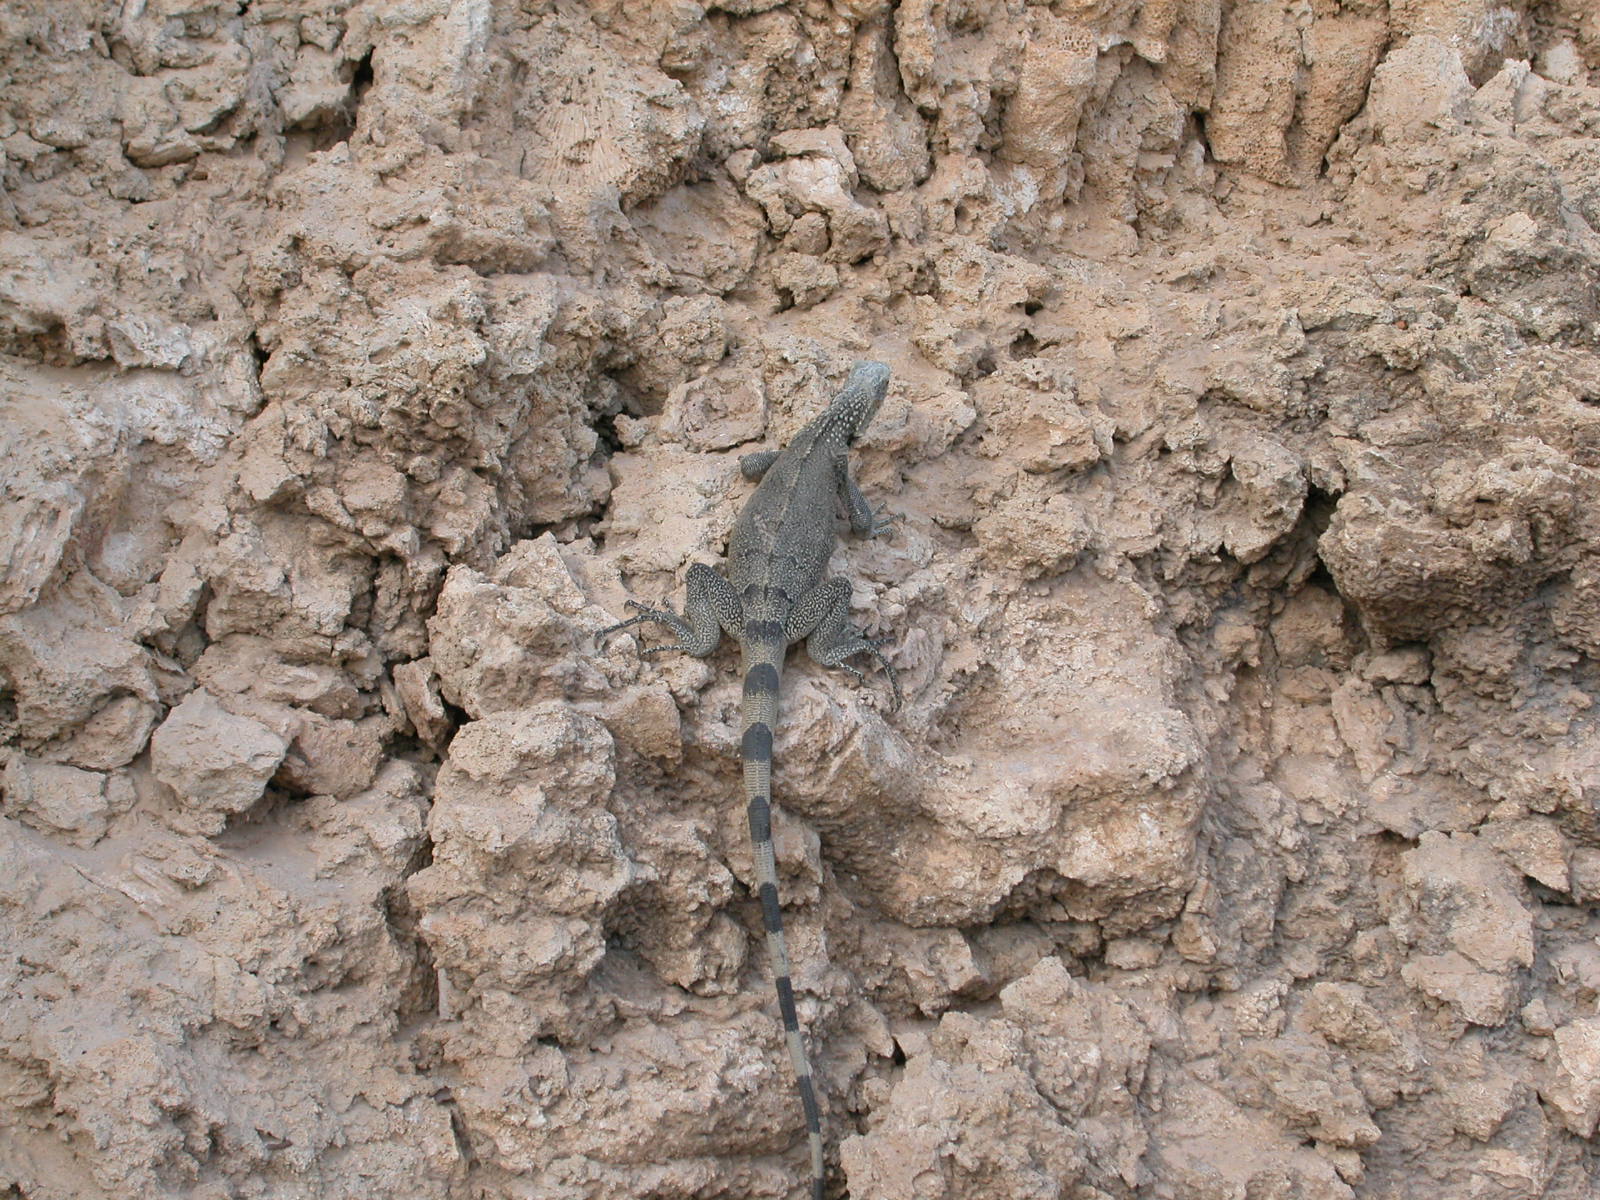 lizard on rocks rock face reptile